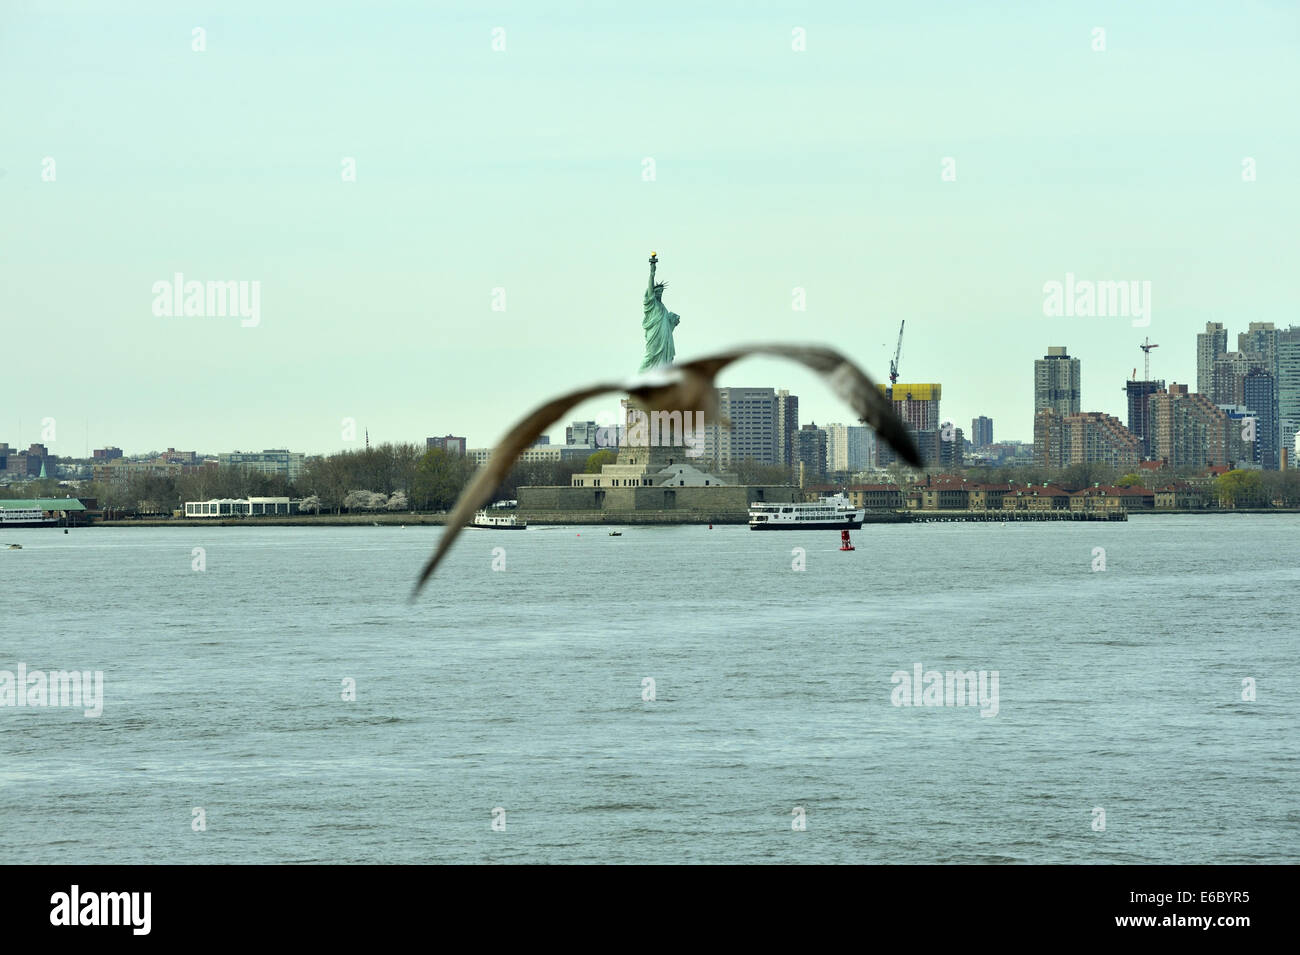 Une mouette obstrue la vue de la Statue de la liberté. New York, USA Banque D'Images